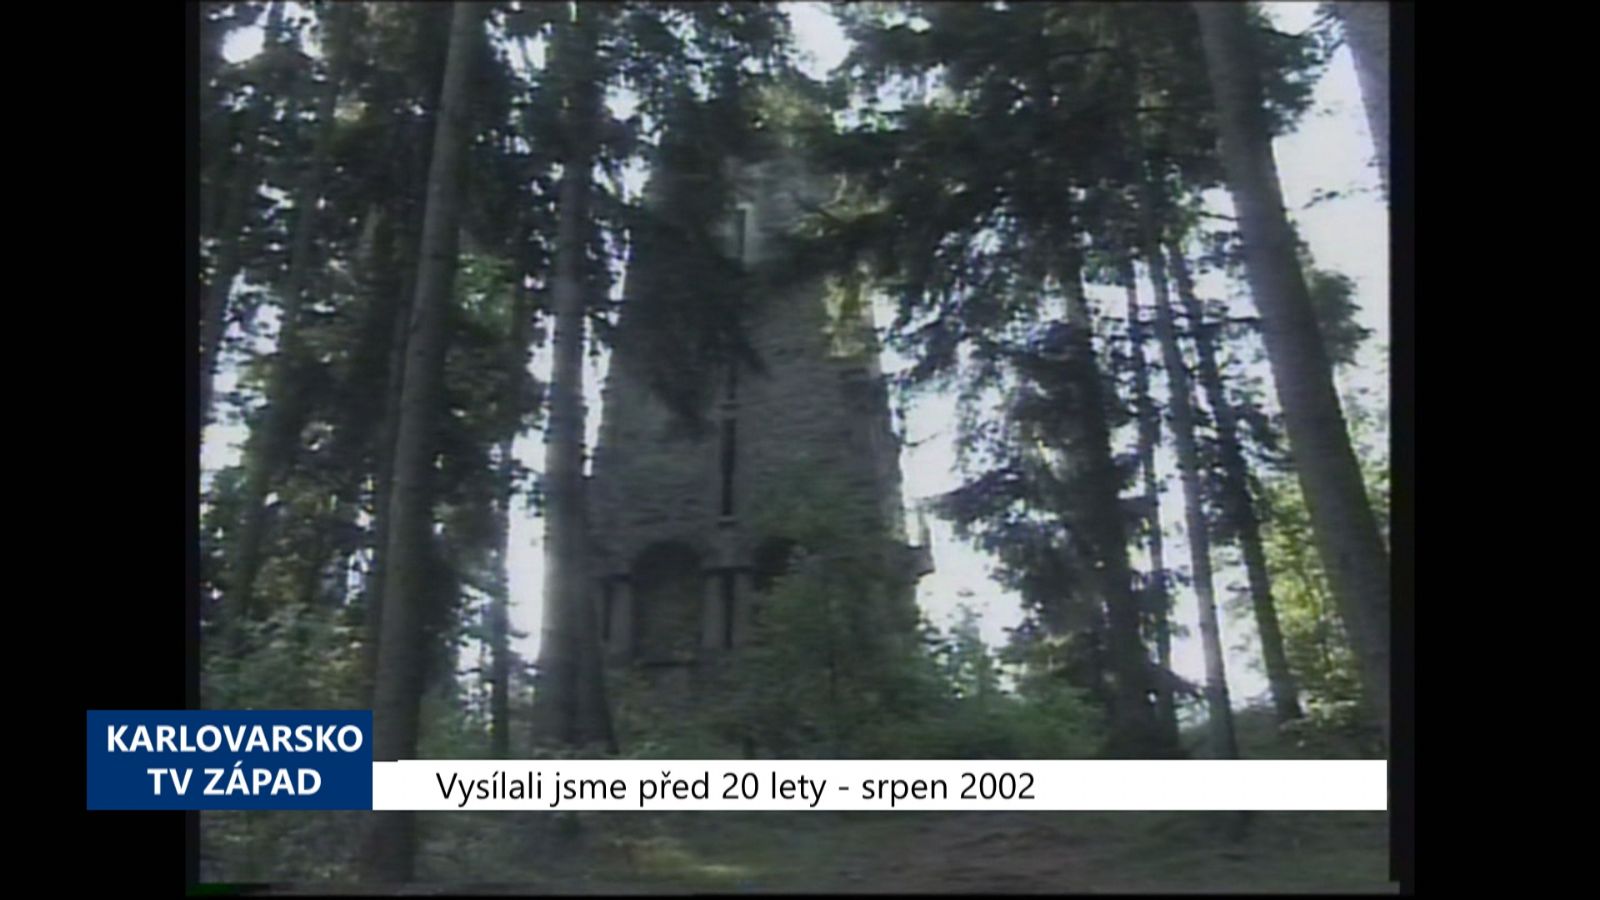 2002 – Cheb: Nově nabytou Bismarckovu věž chce město opravit (TV Západ)